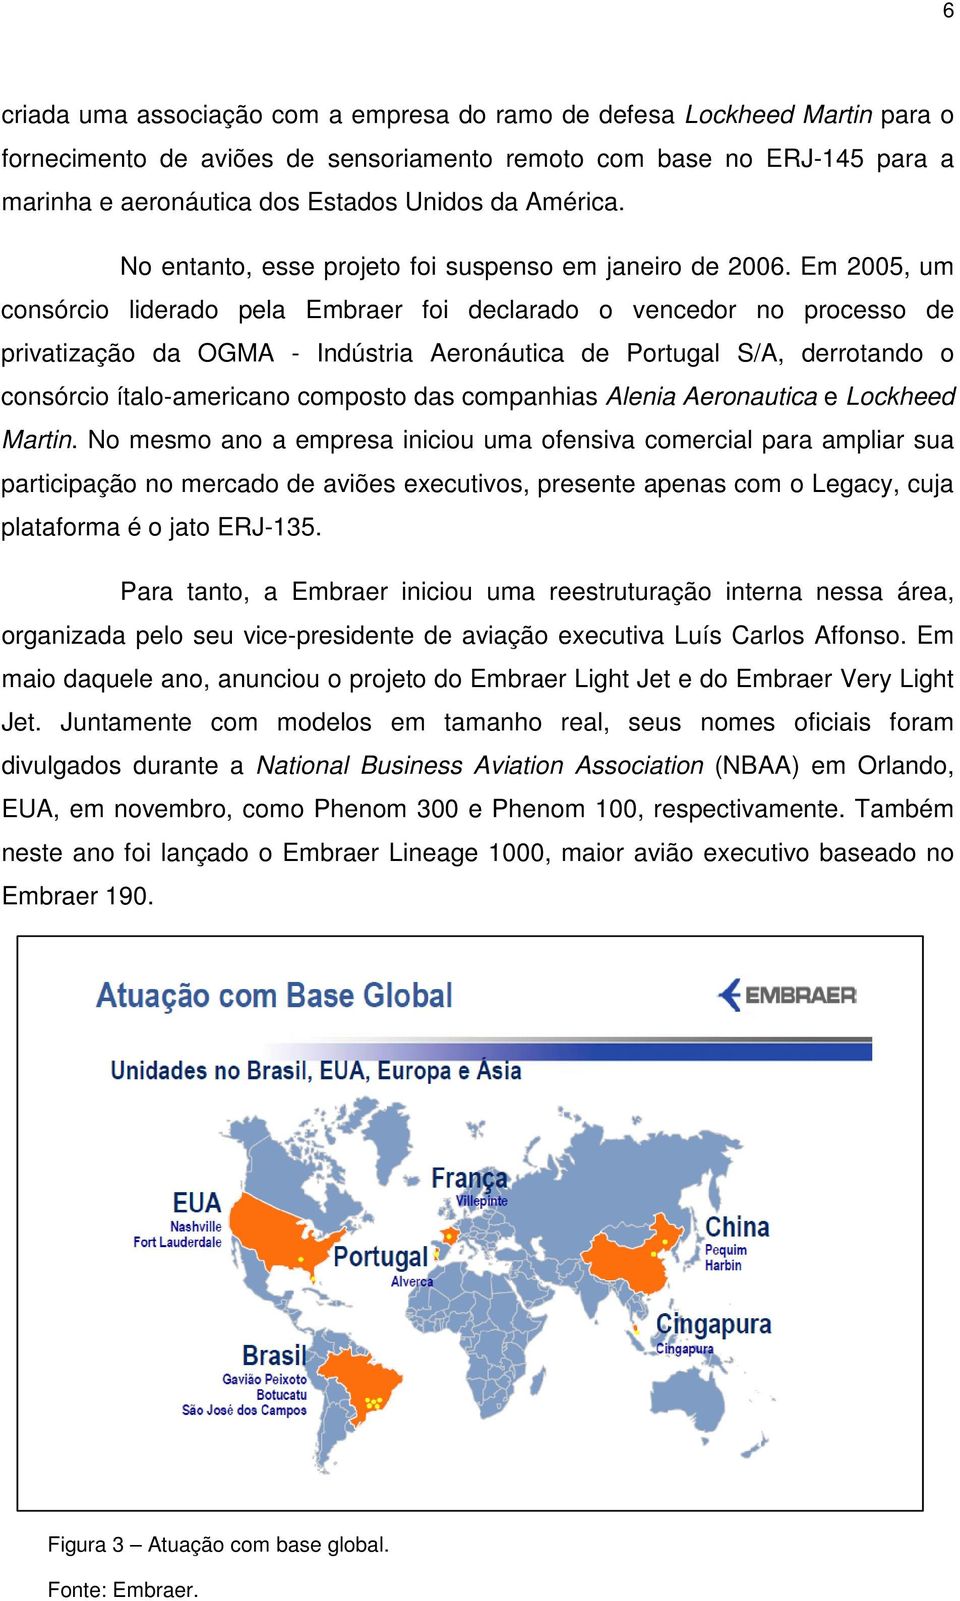 Em 2005, um consórcio liderado pela Embraer foi declarado o vencedor no processo de privatização da OGMA - Indústria Aeronáutica de Portugal S/A, derrotando o consórcio ítalo-americano composto das